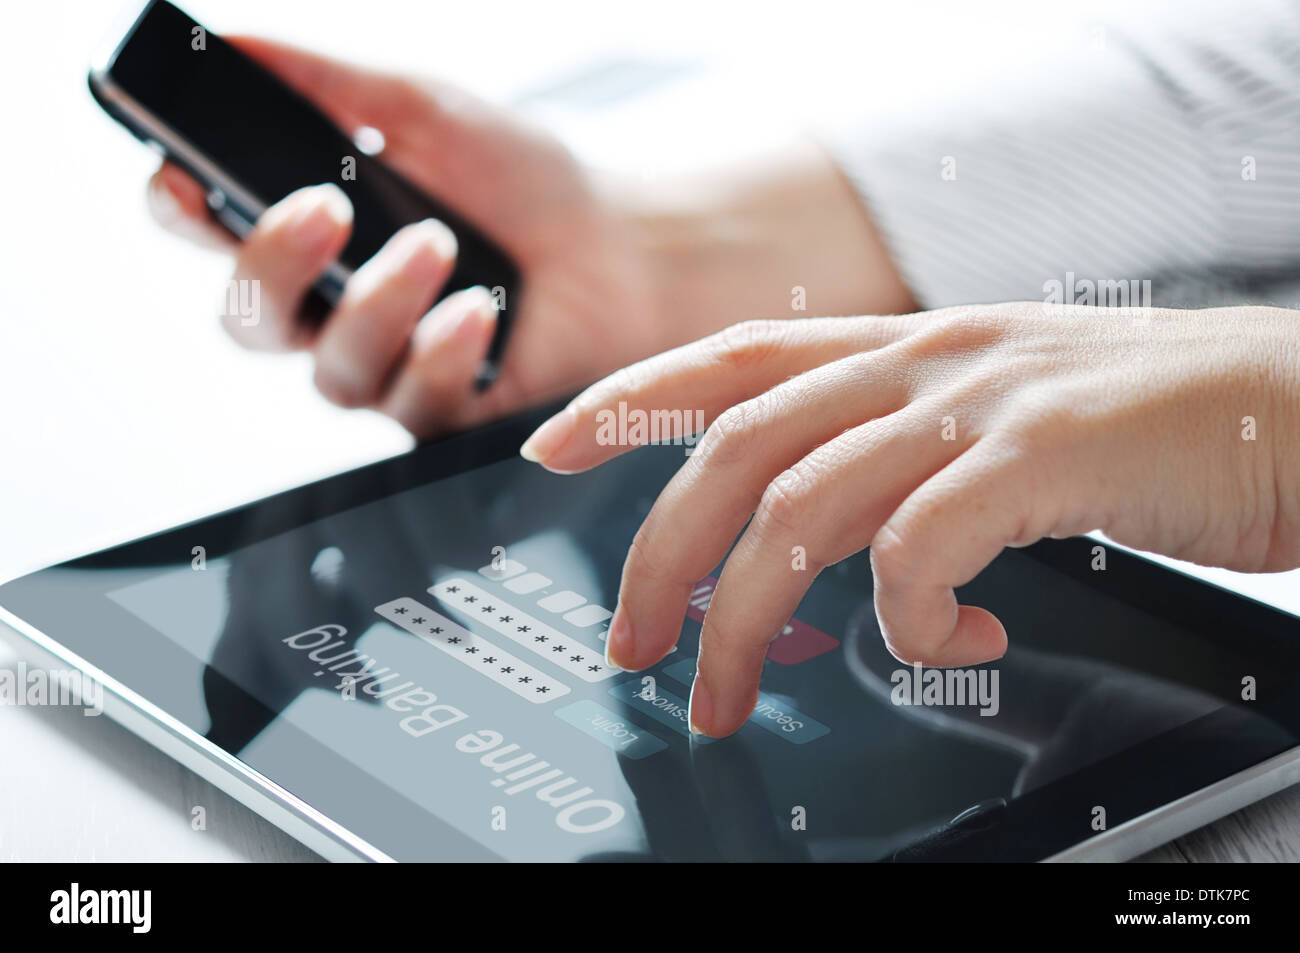 Manos femeninas trabajan con la banca en línea en la pantalla táctil del dispositivo Foto de stock